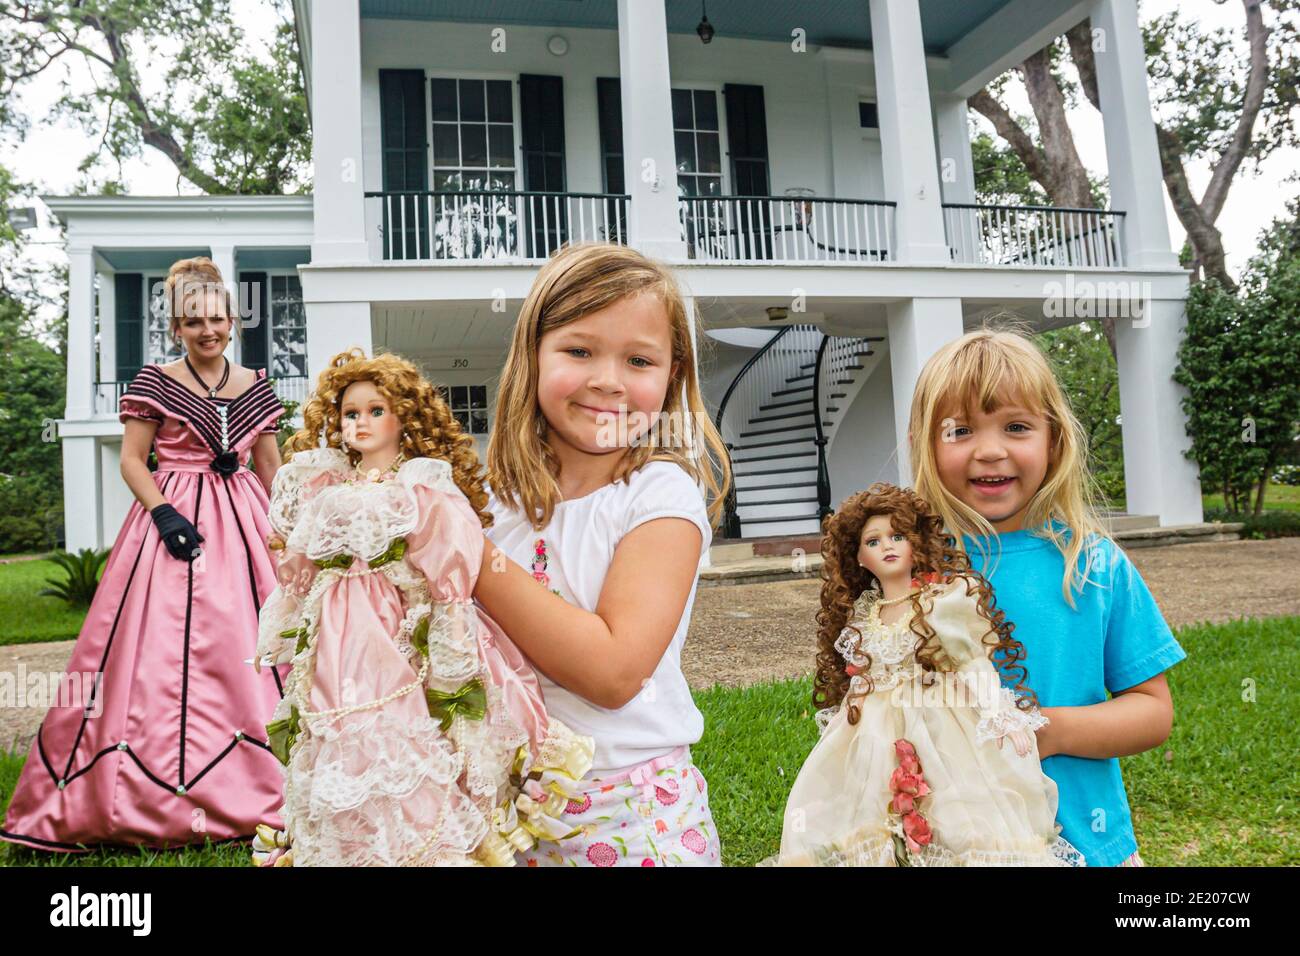 Alabama Mobile Oakleigh Historic Complex 1833 Greek Revival Mansion, donna guida donna vestito periodo vestito ragazza bambine bambini bambole, Foto Stock